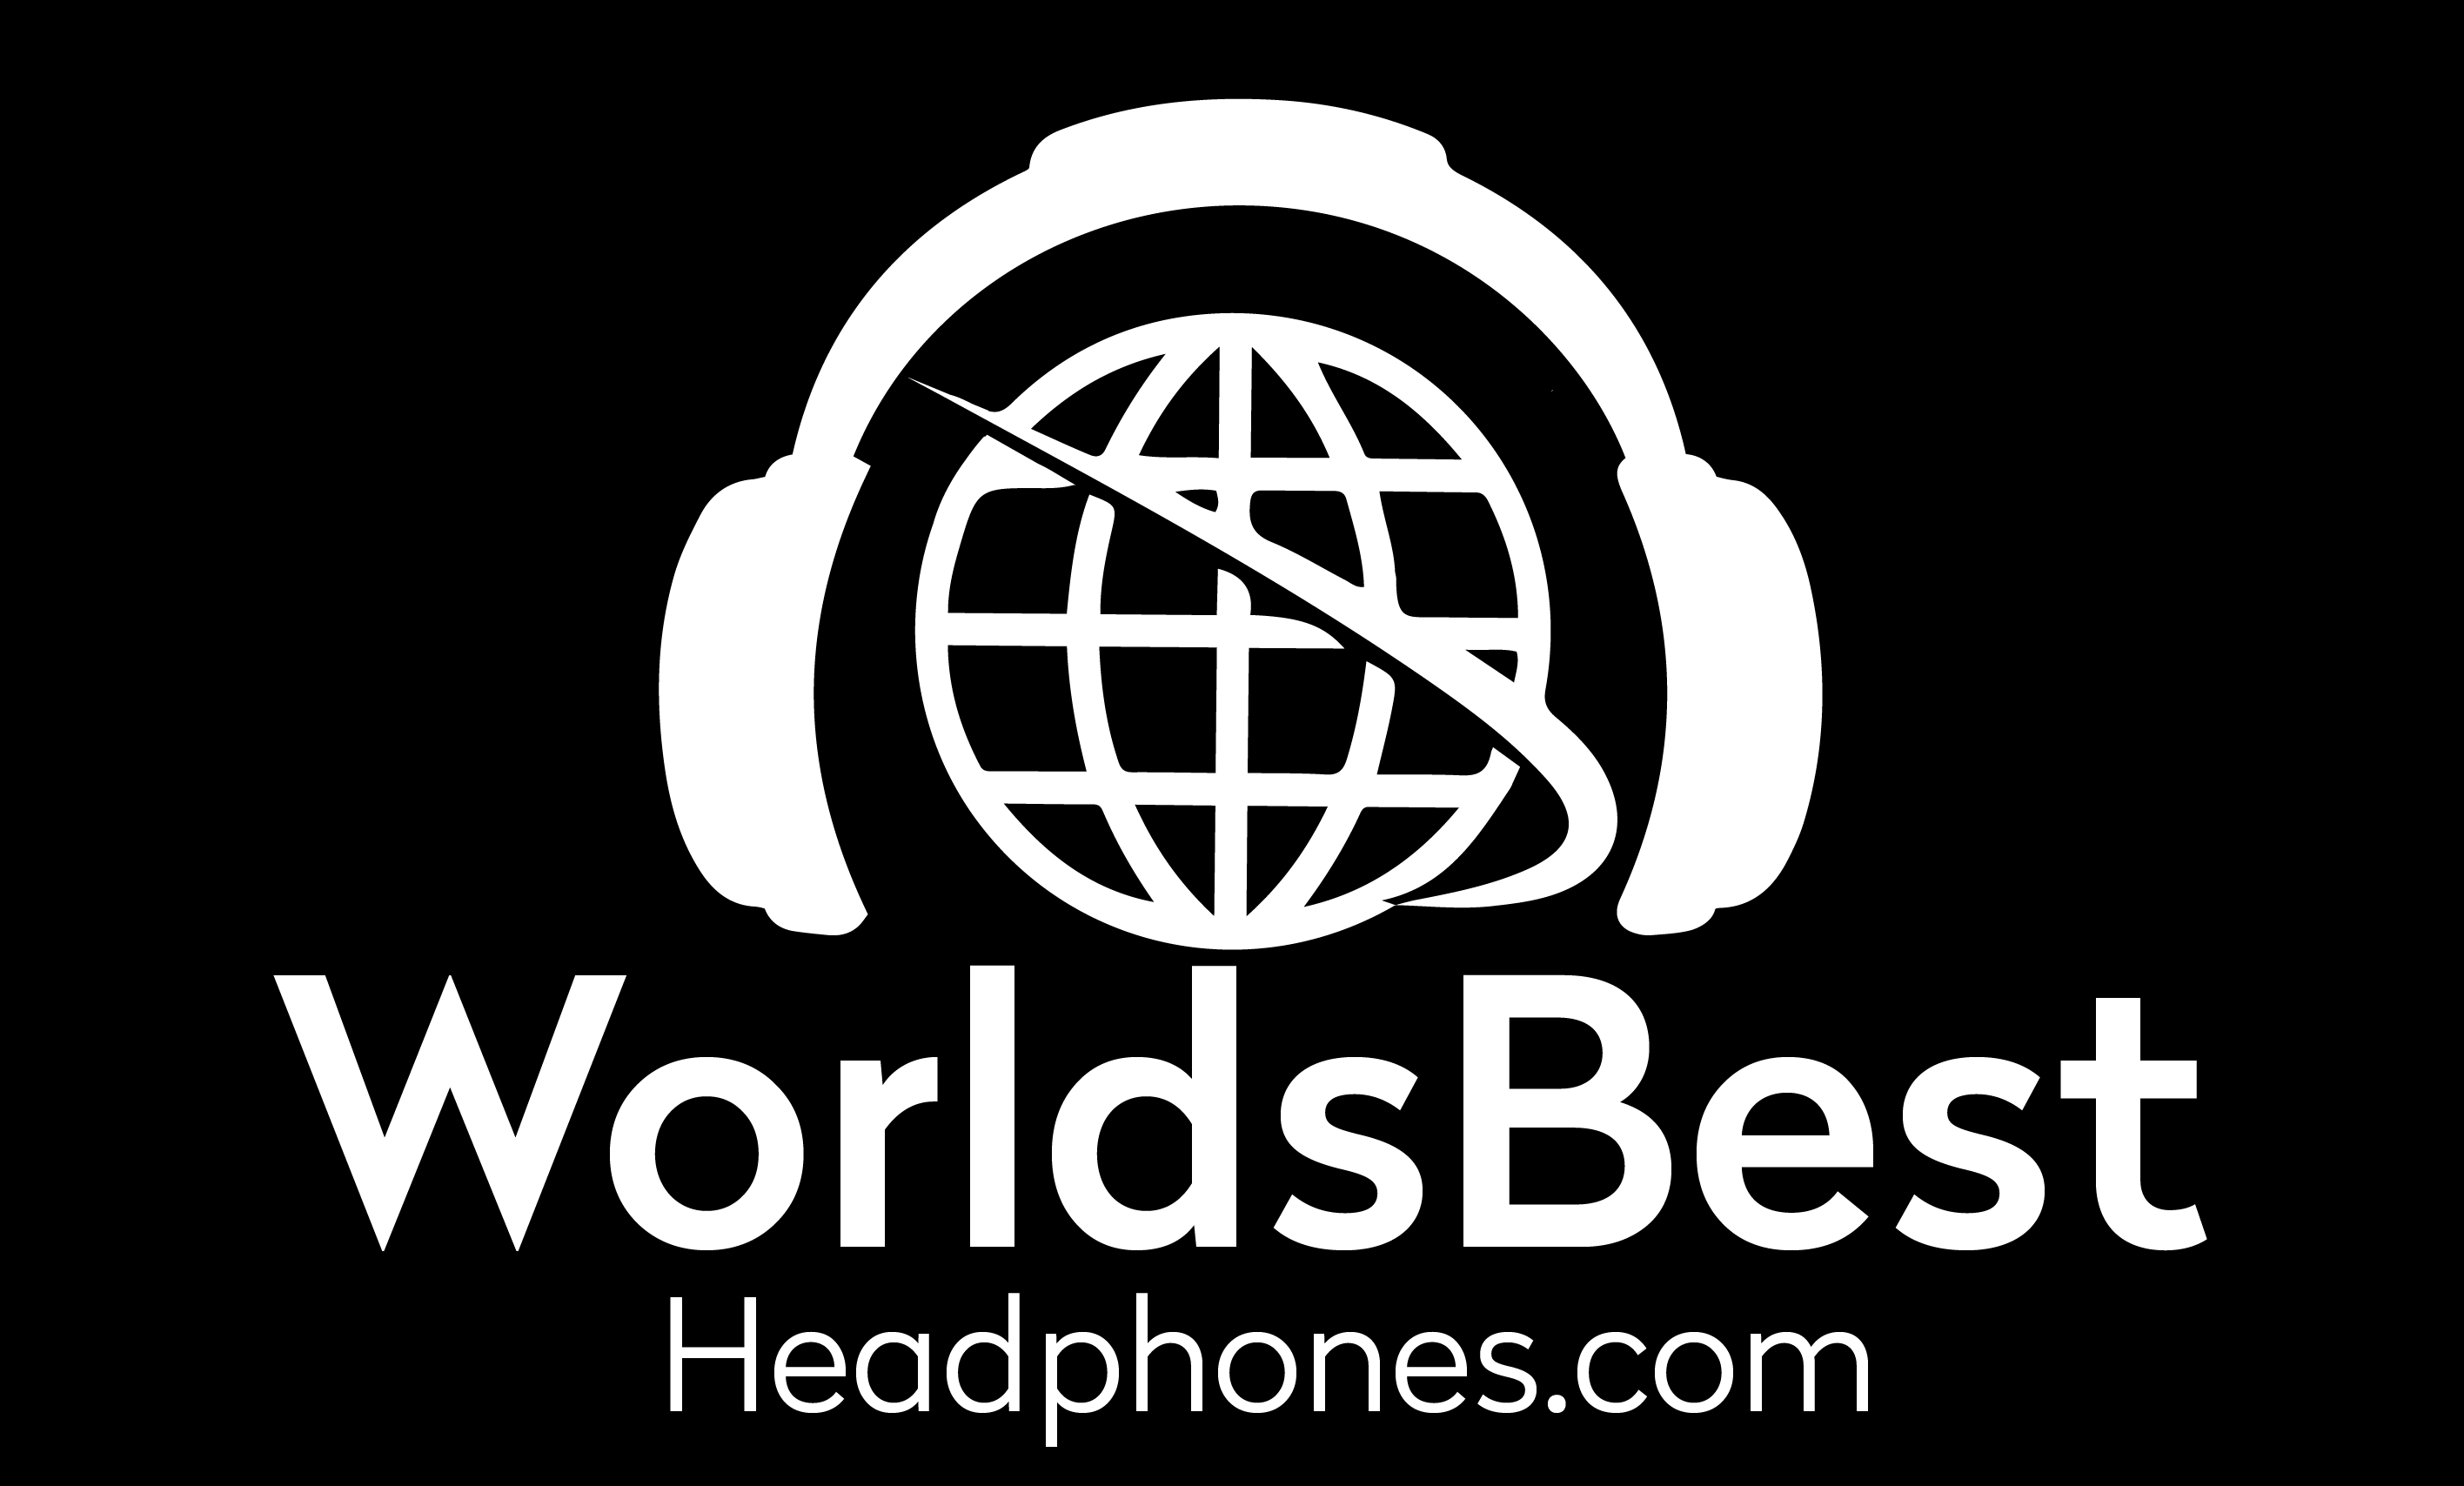 World's Best Headphones